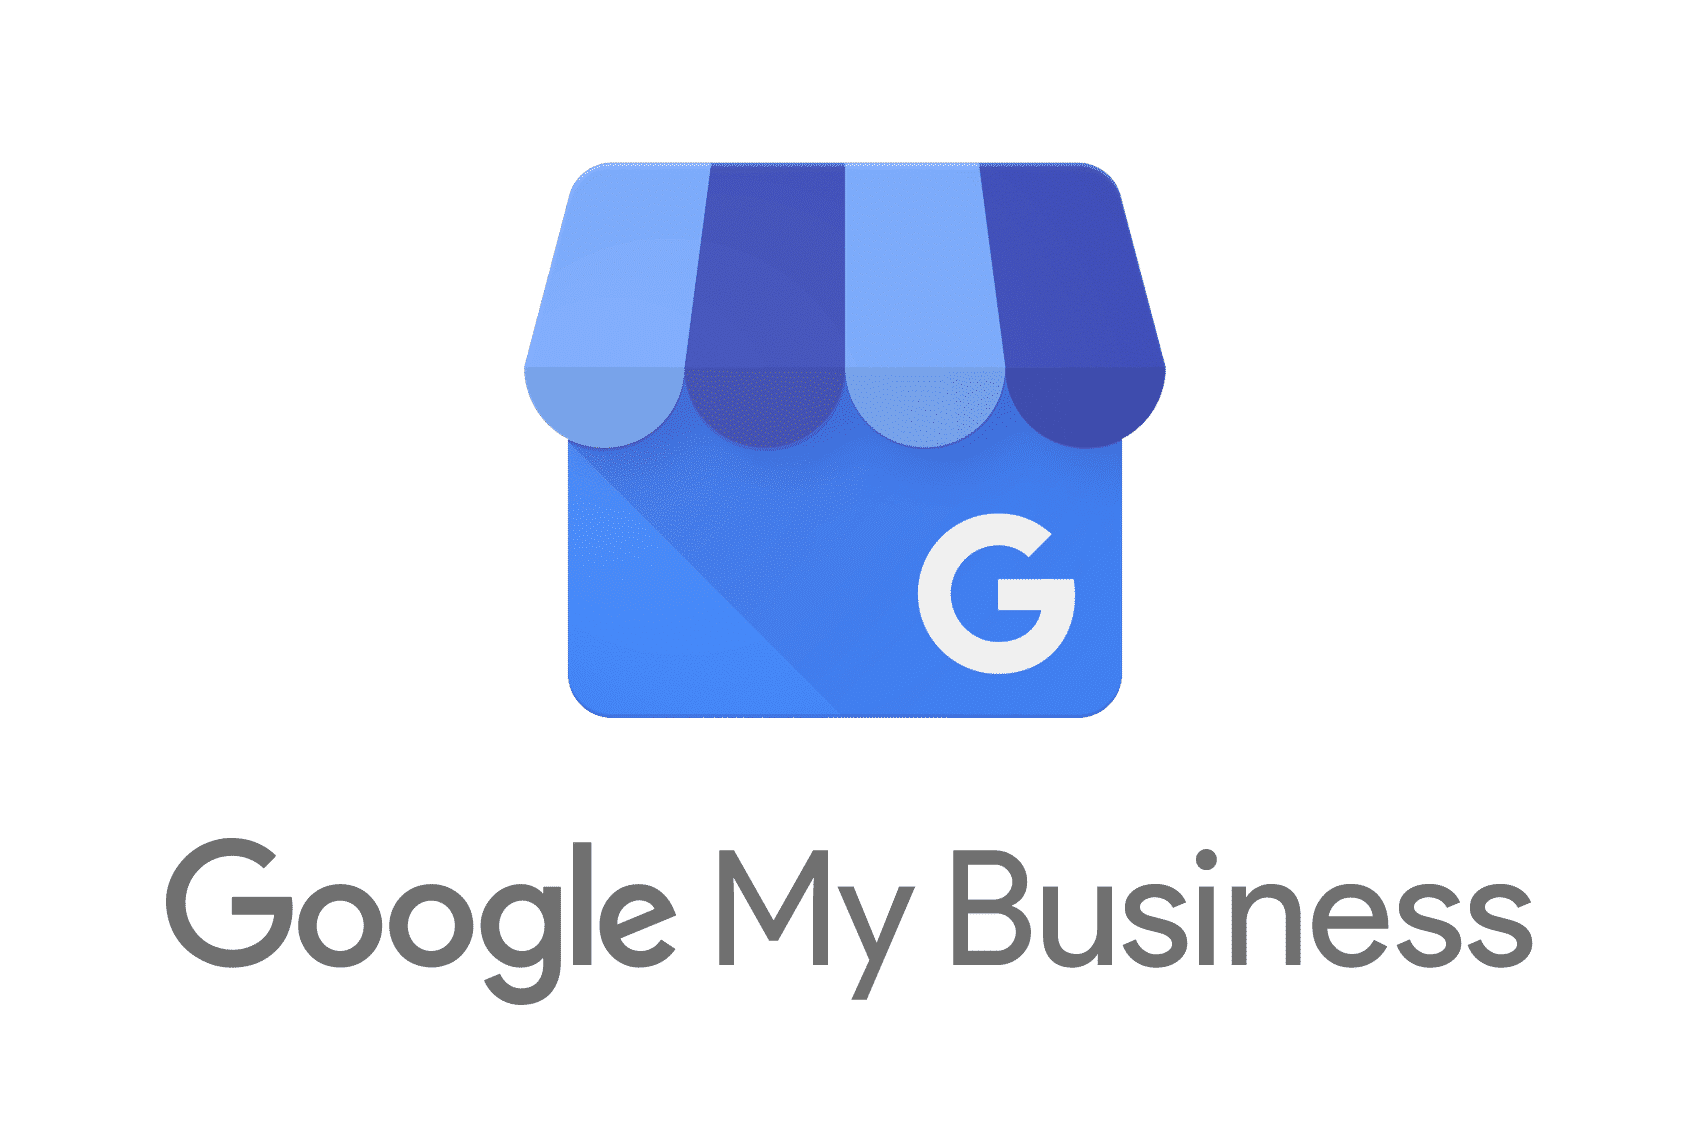 Comment gérer son compte Google My Business depuis une recherche